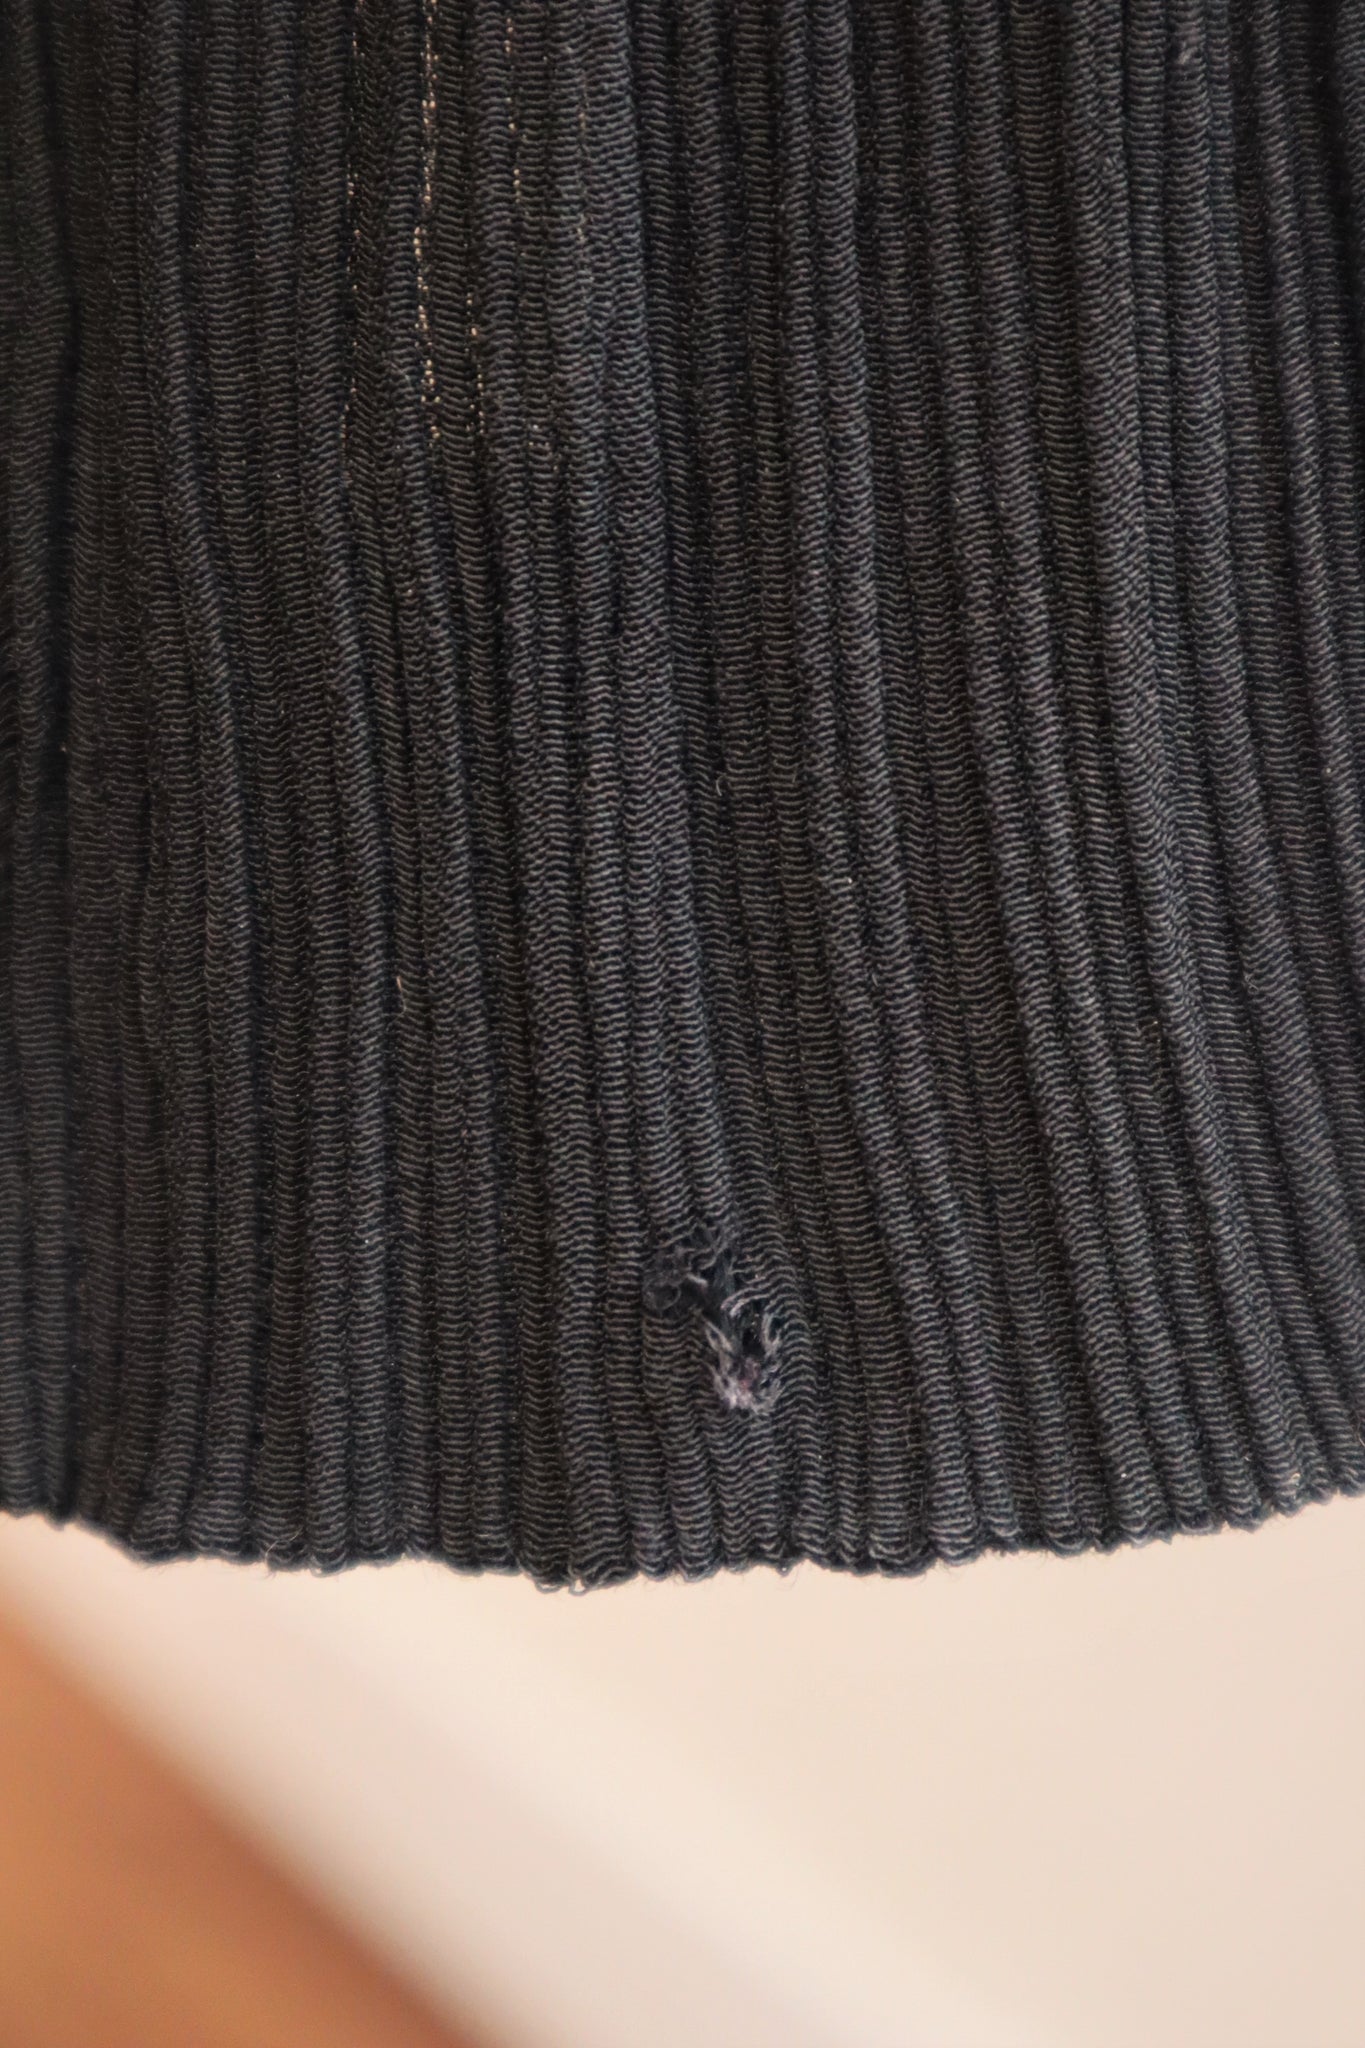 70s Black Pleated Textured Dress